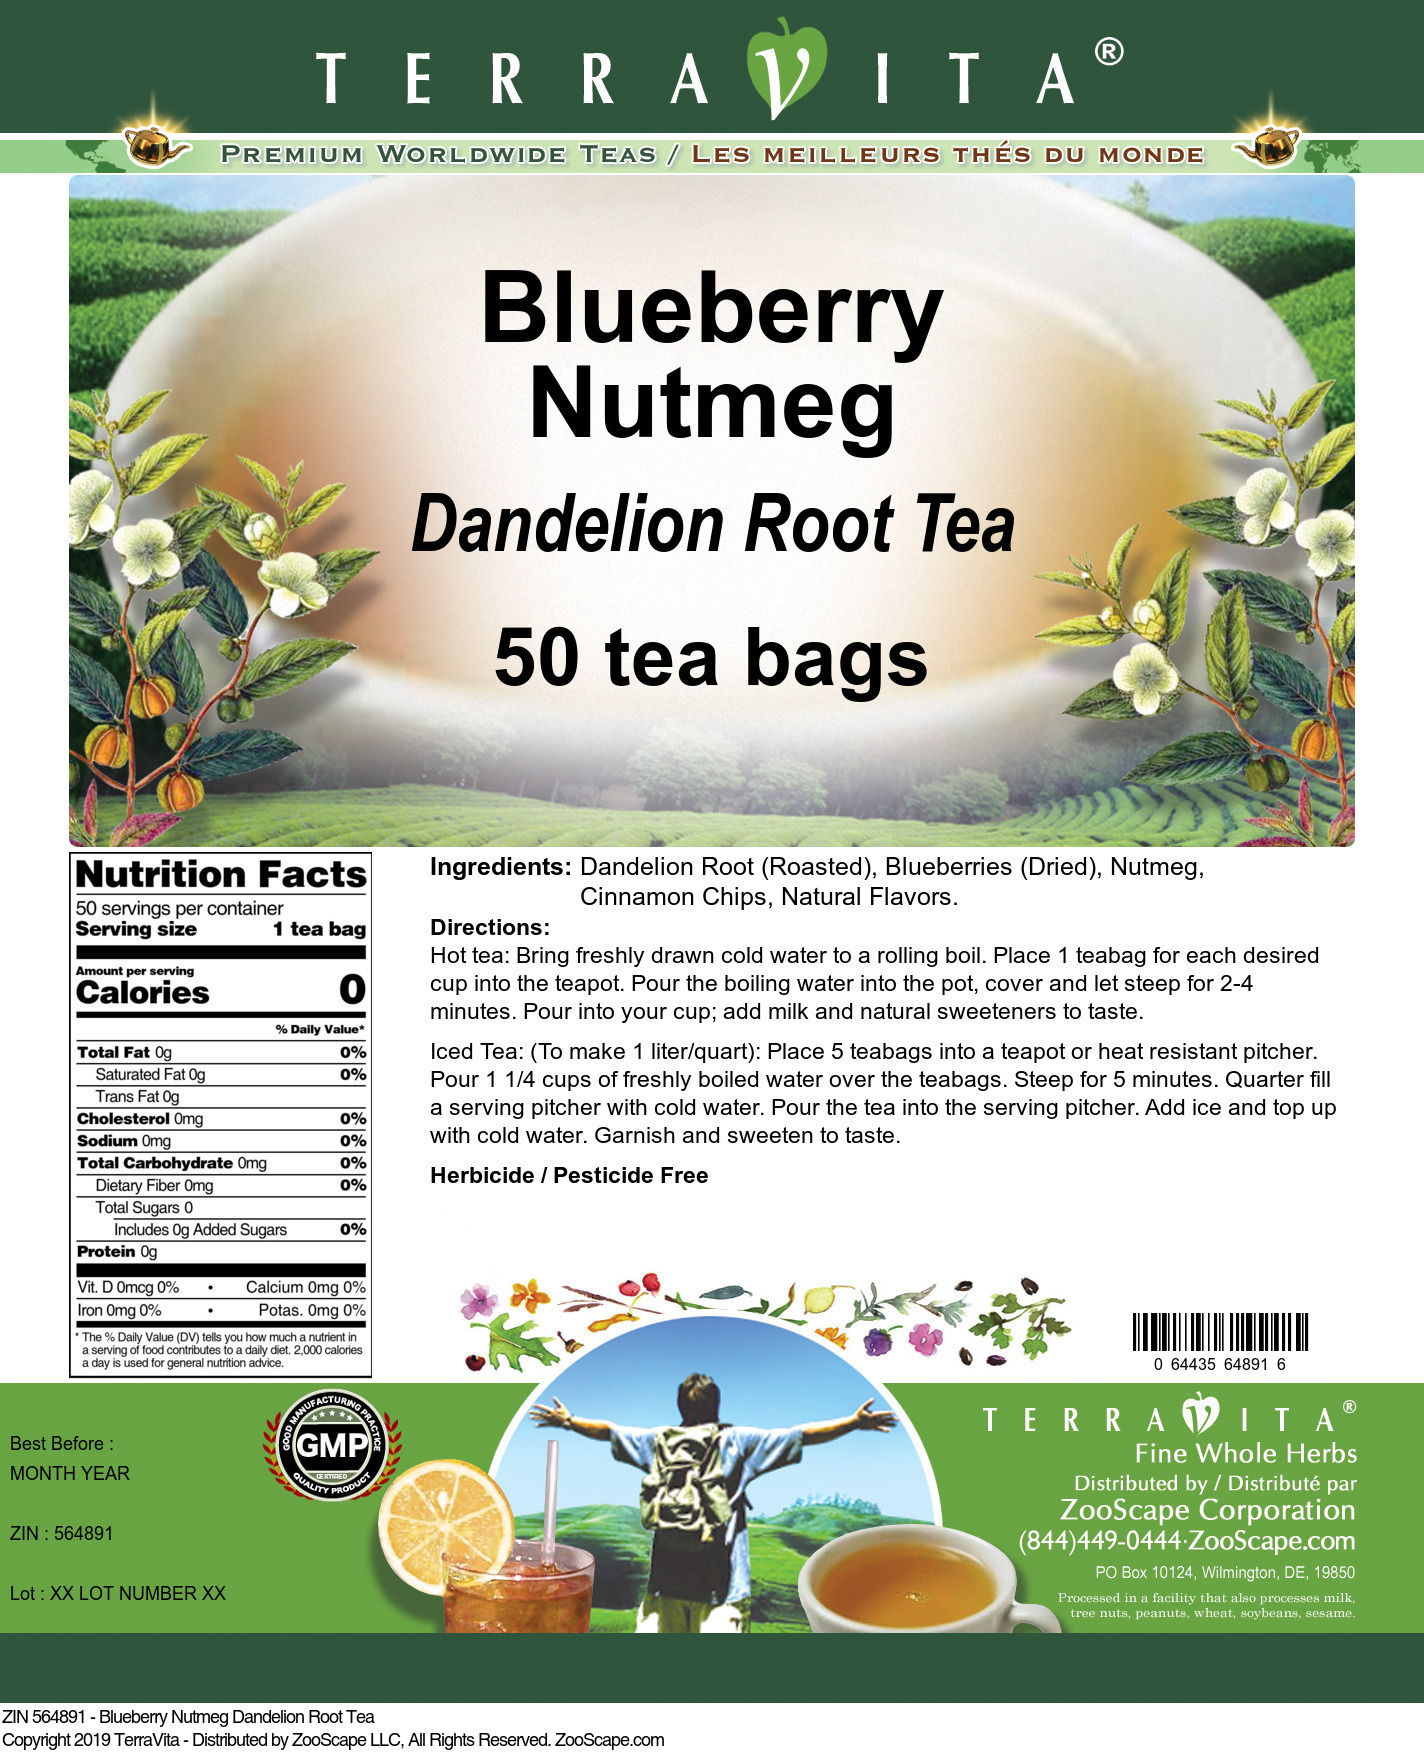 Blueberry Nutmeg Dandelion Root Tea - Label